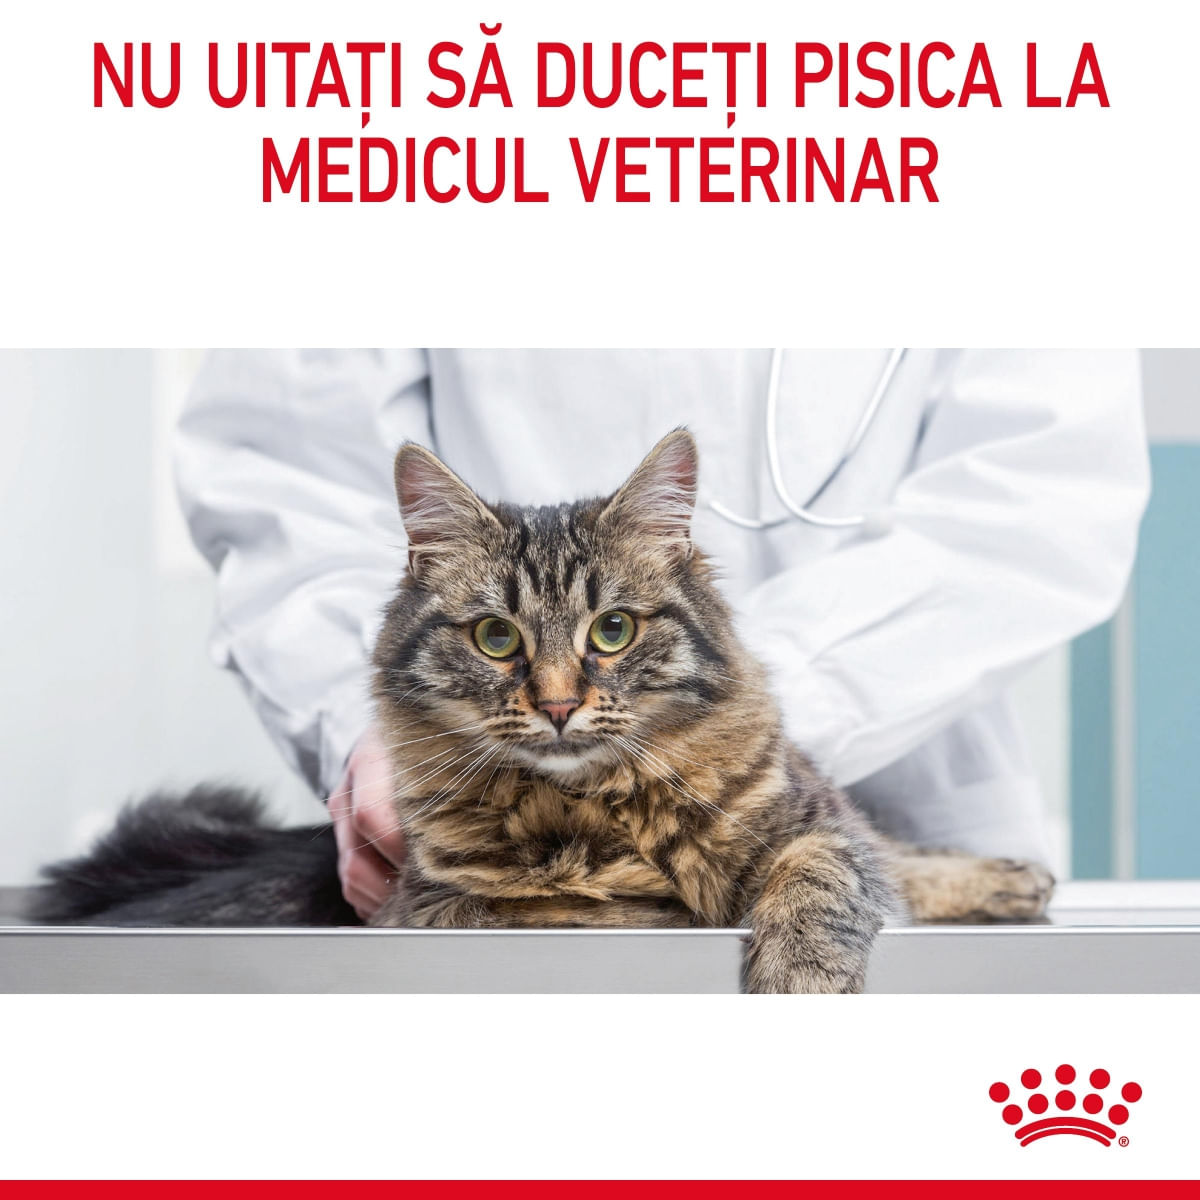 Royal Canin Urinary Care Adult, hrană uscată pisici, sănătatea tractului urinar ROYAL CANIN Feline Care Nutrition Urinary Care, hrană uscată pisici, sănătatea tractului urinar, 400g